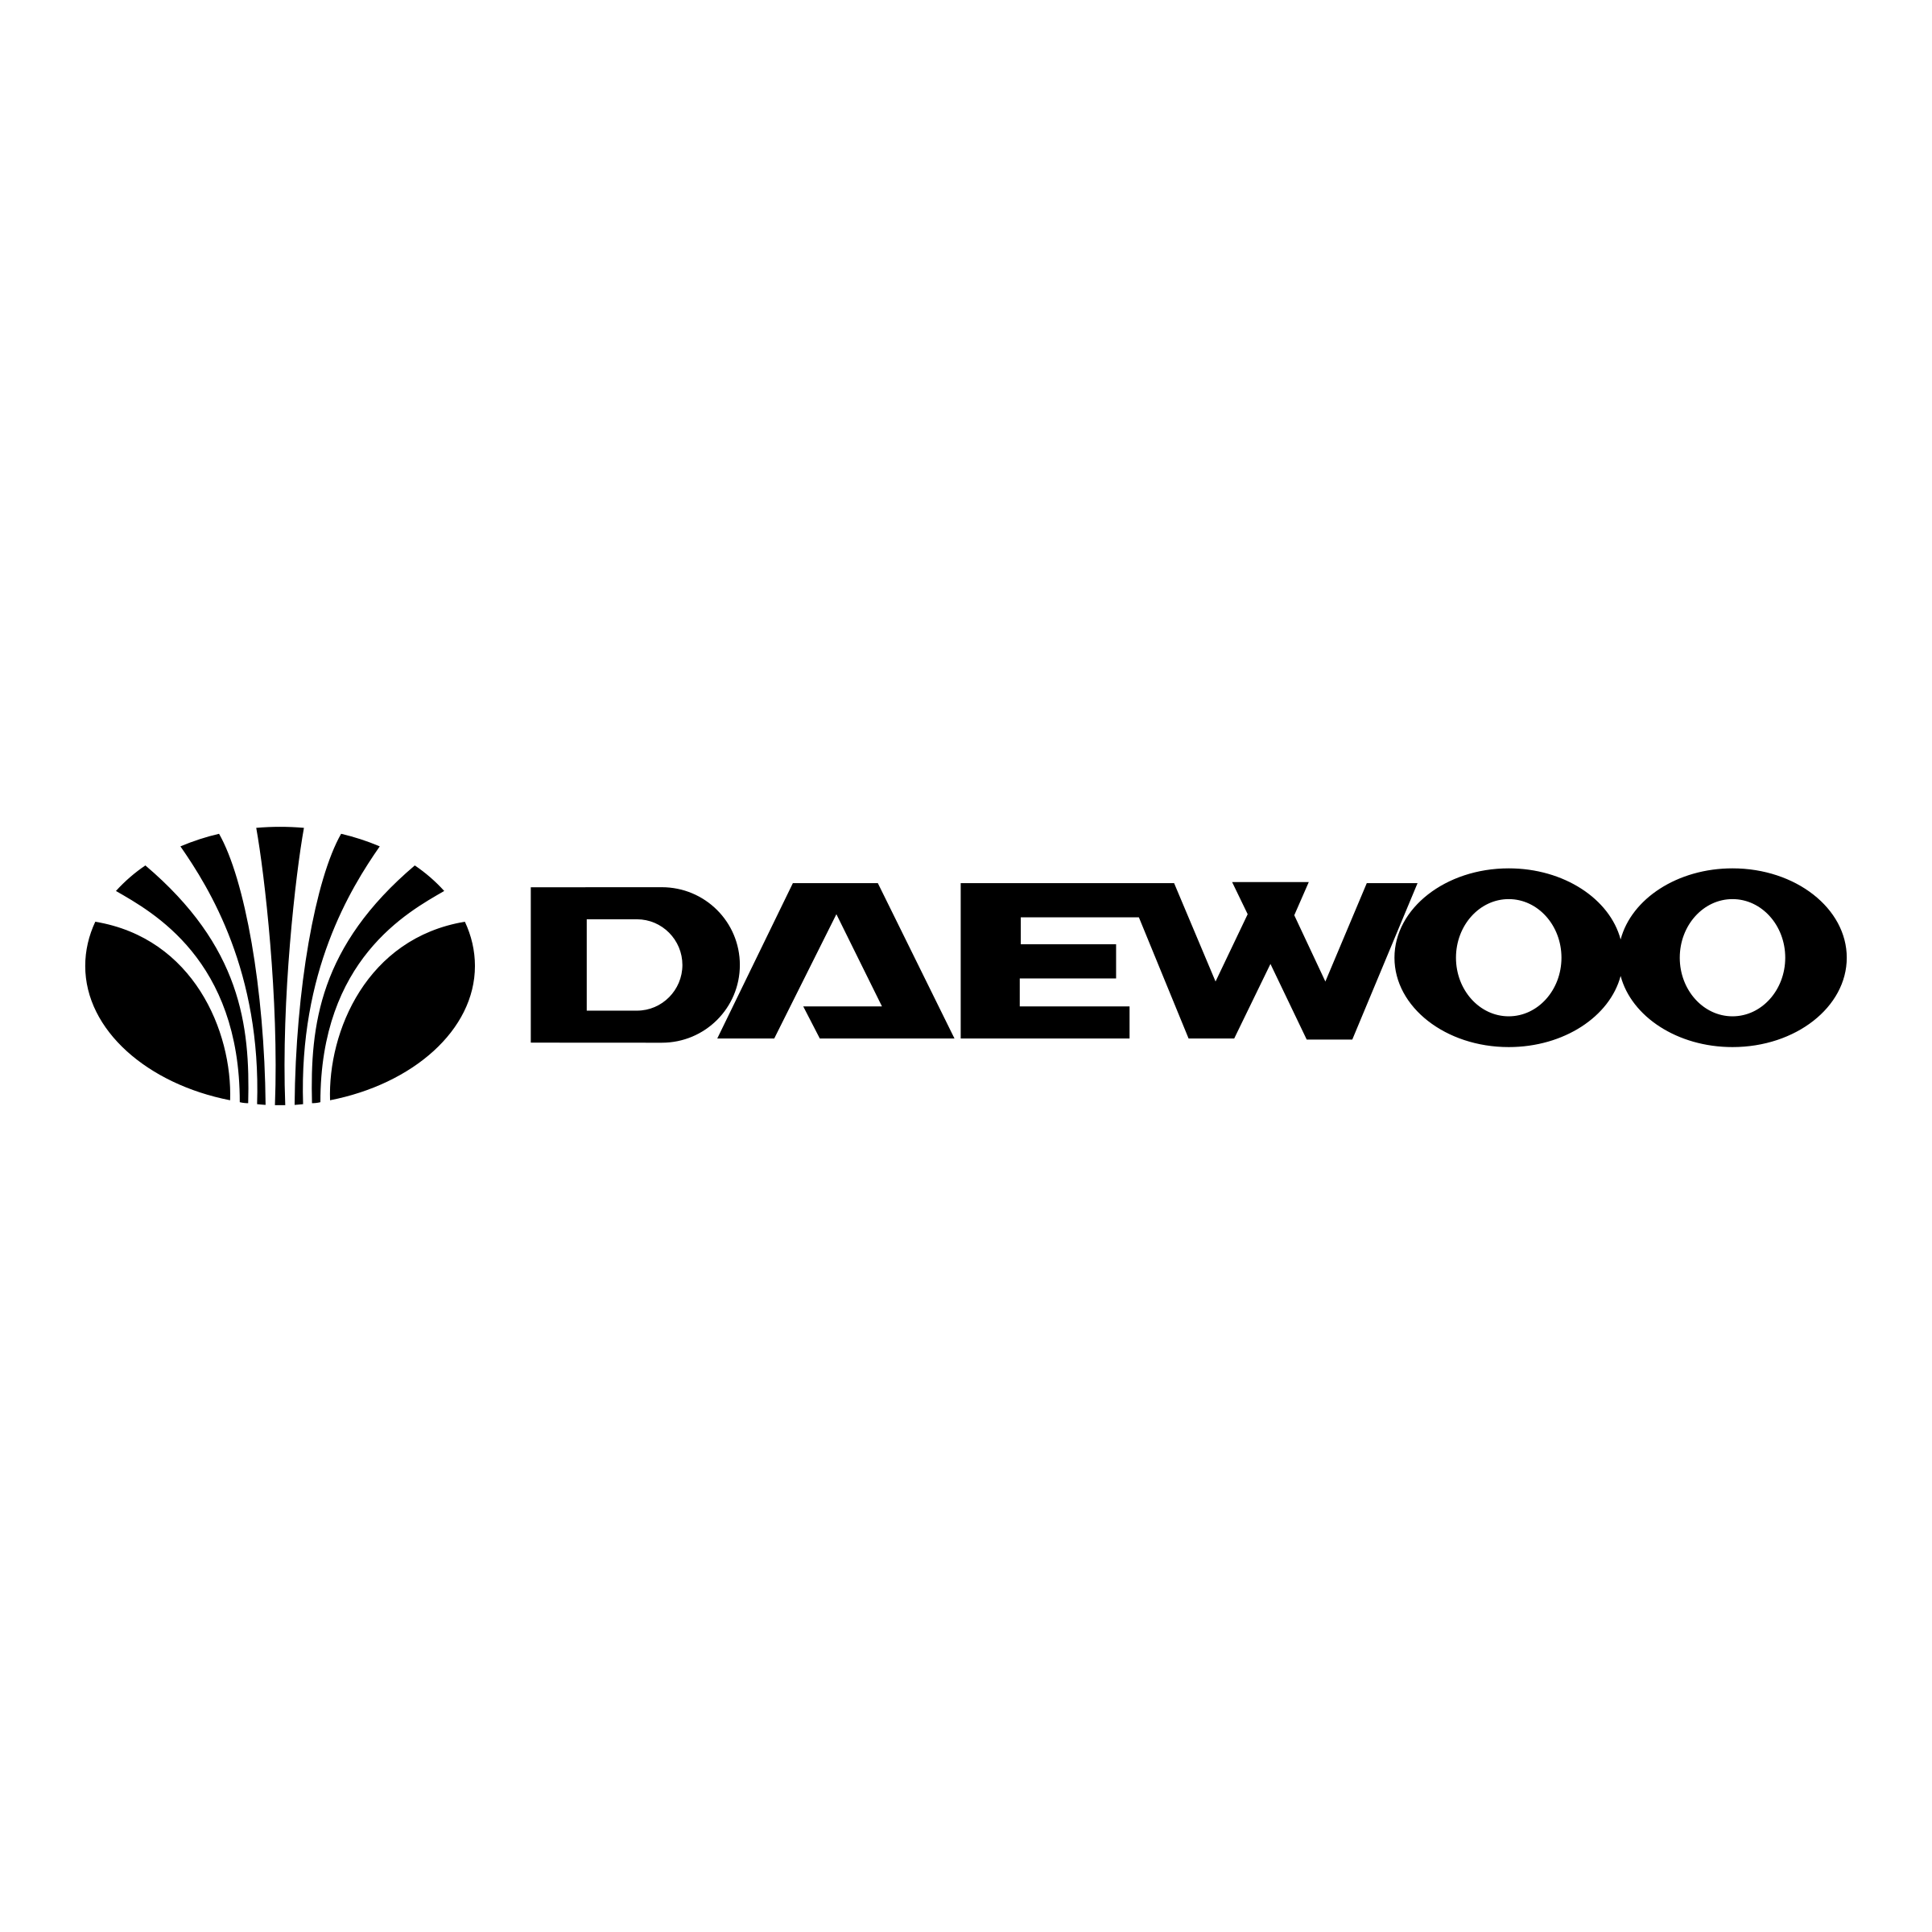 Uz-Daewoo Logo - Daewoo cars PNG image free download